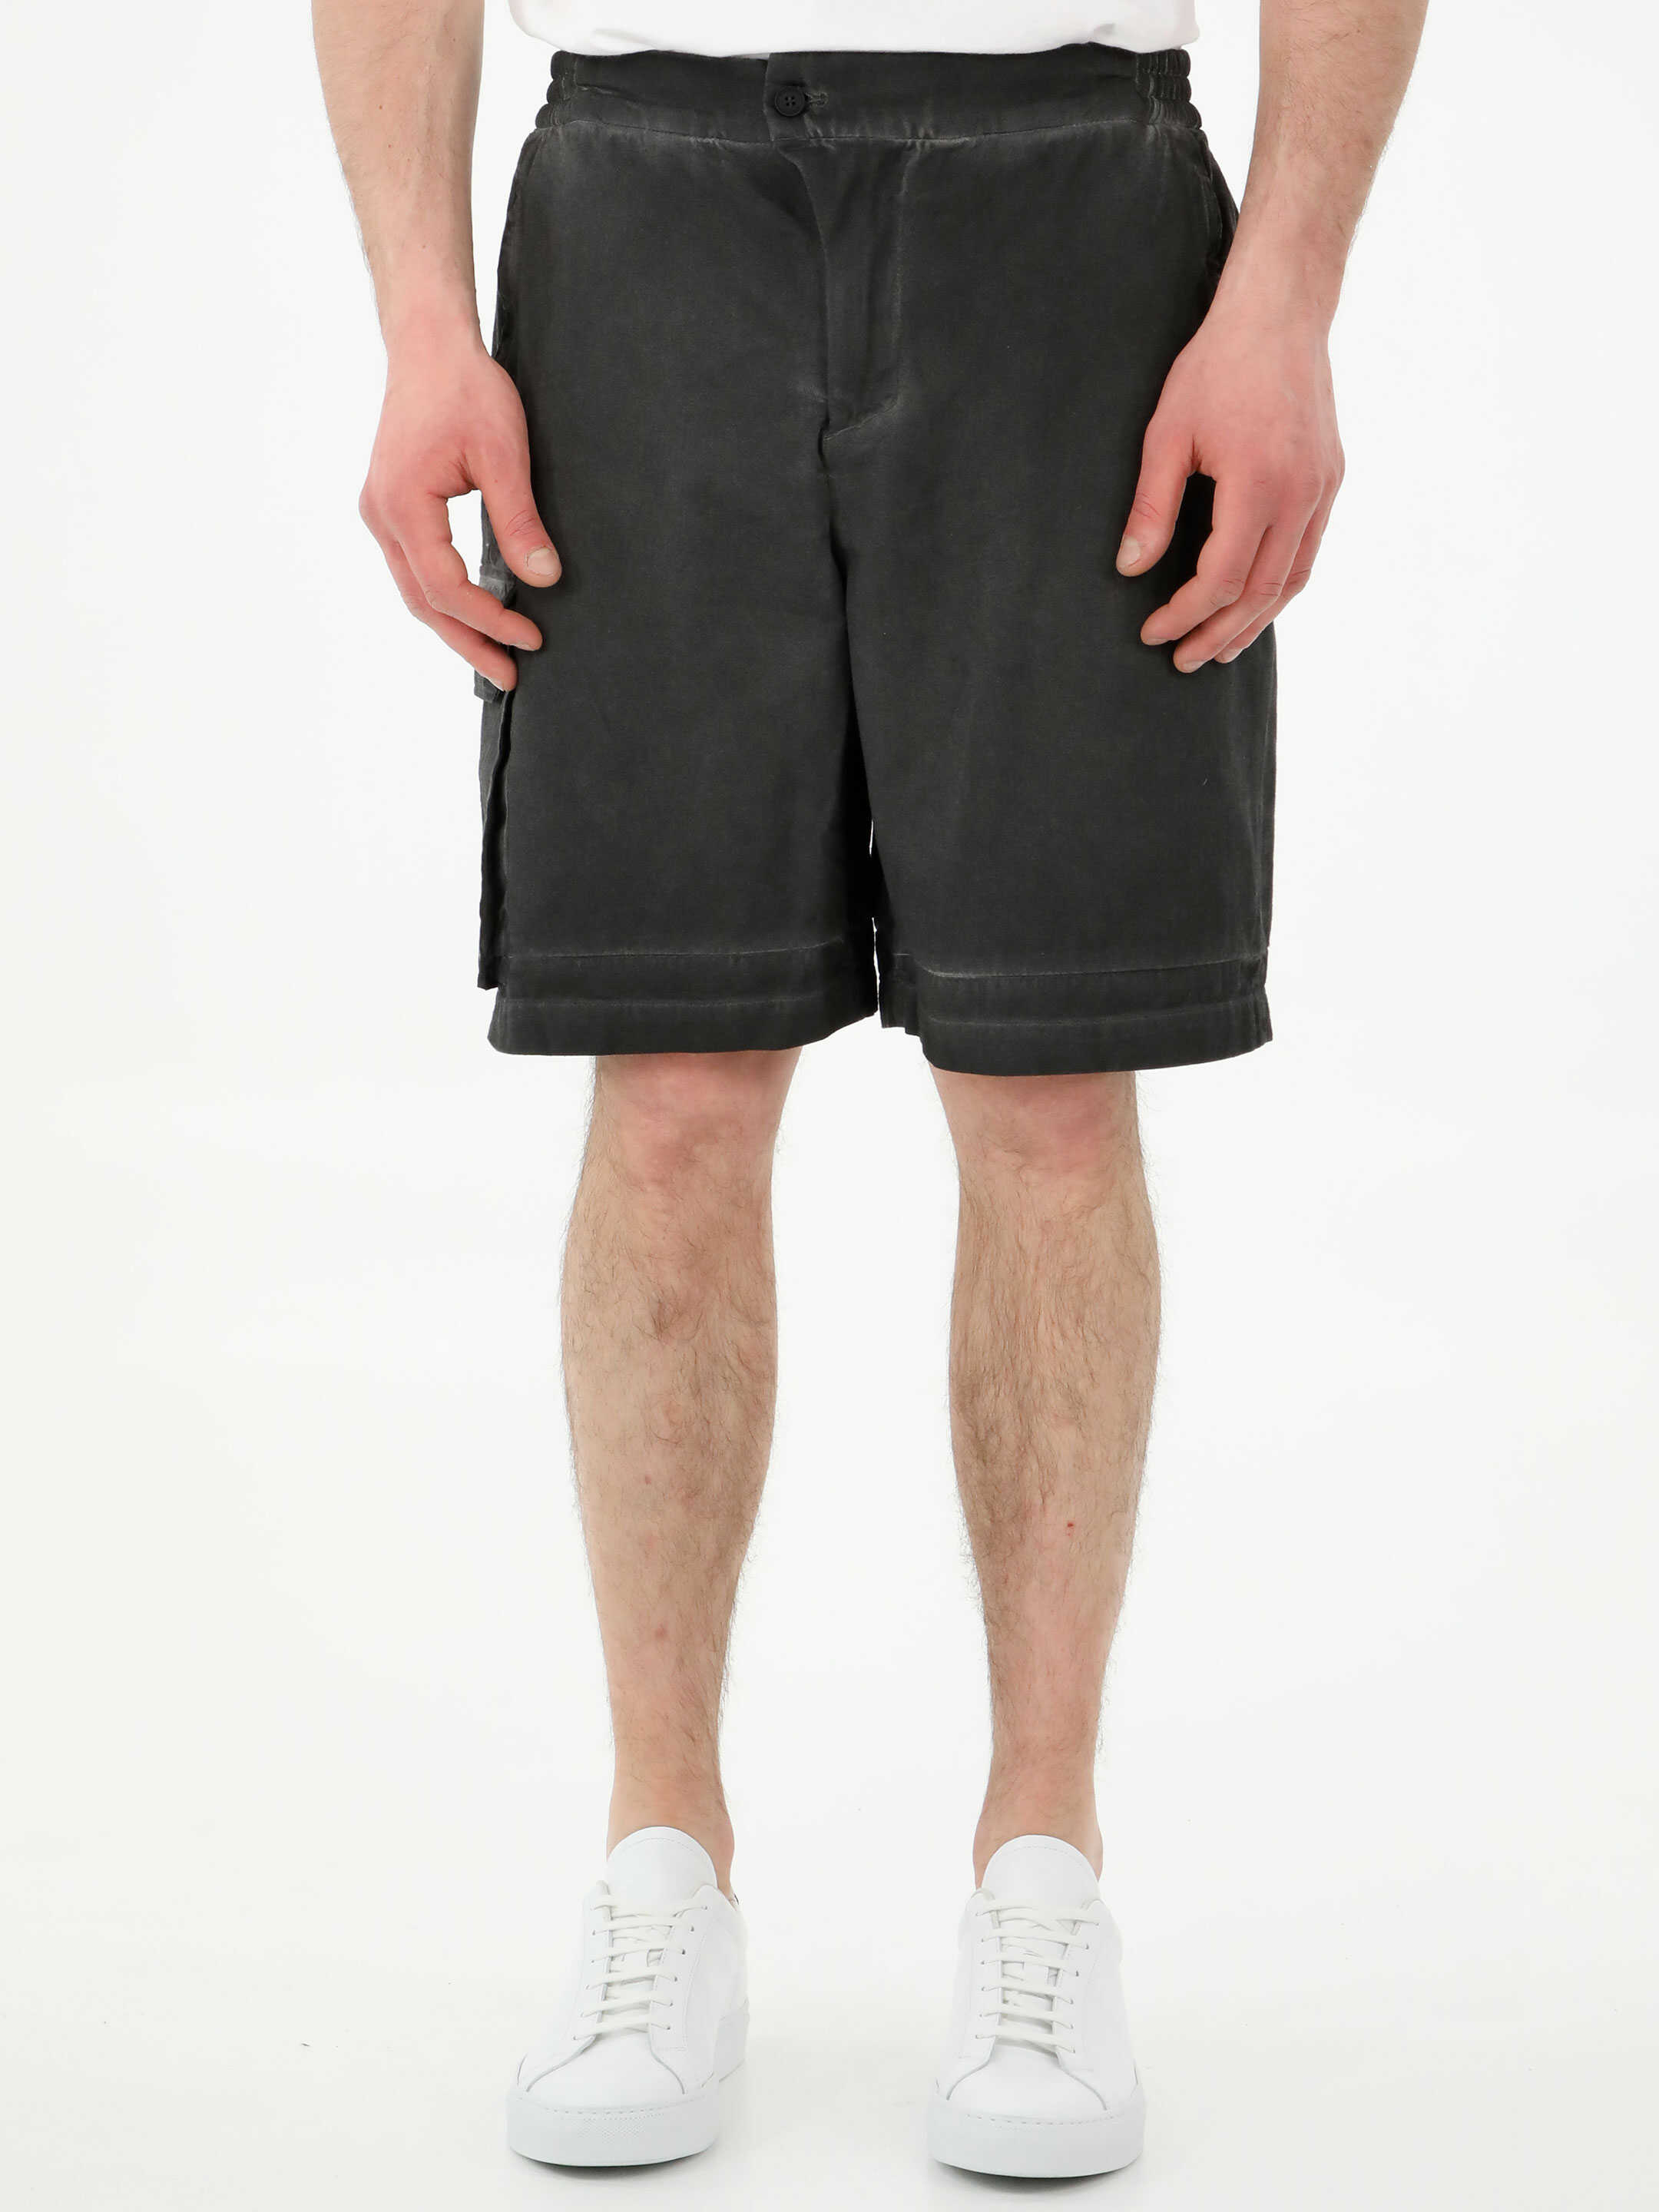 A-COLD-WALL* Density Bermuda Shorts Black image7